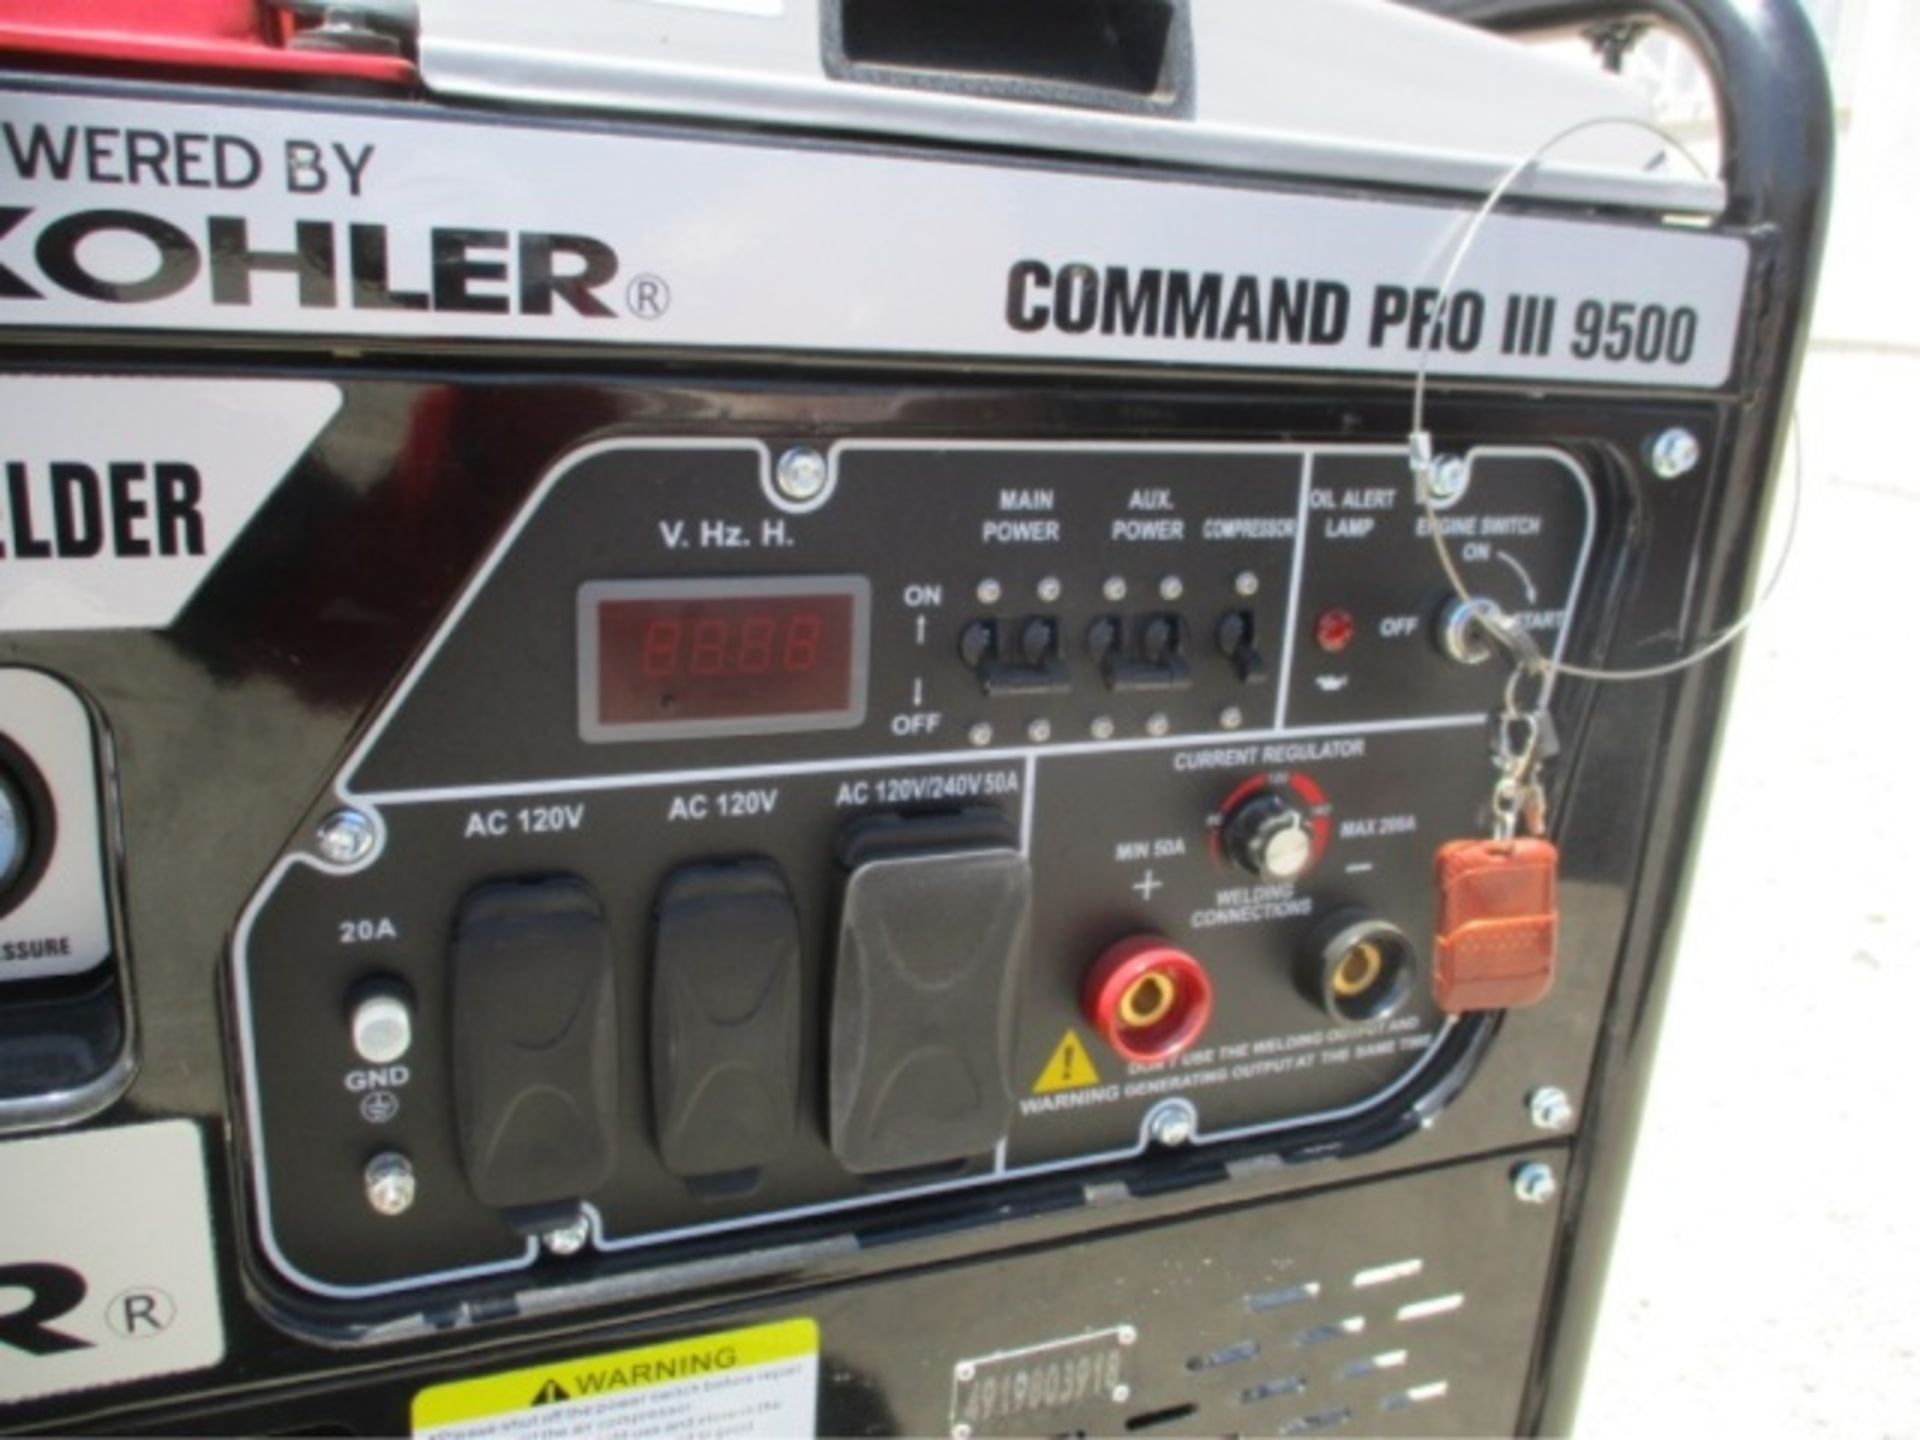 Kohler Command Pro III 9500 Generator Compressor, Welder, Gas Powered, S/N: 4919803918 - Image 14 of 28